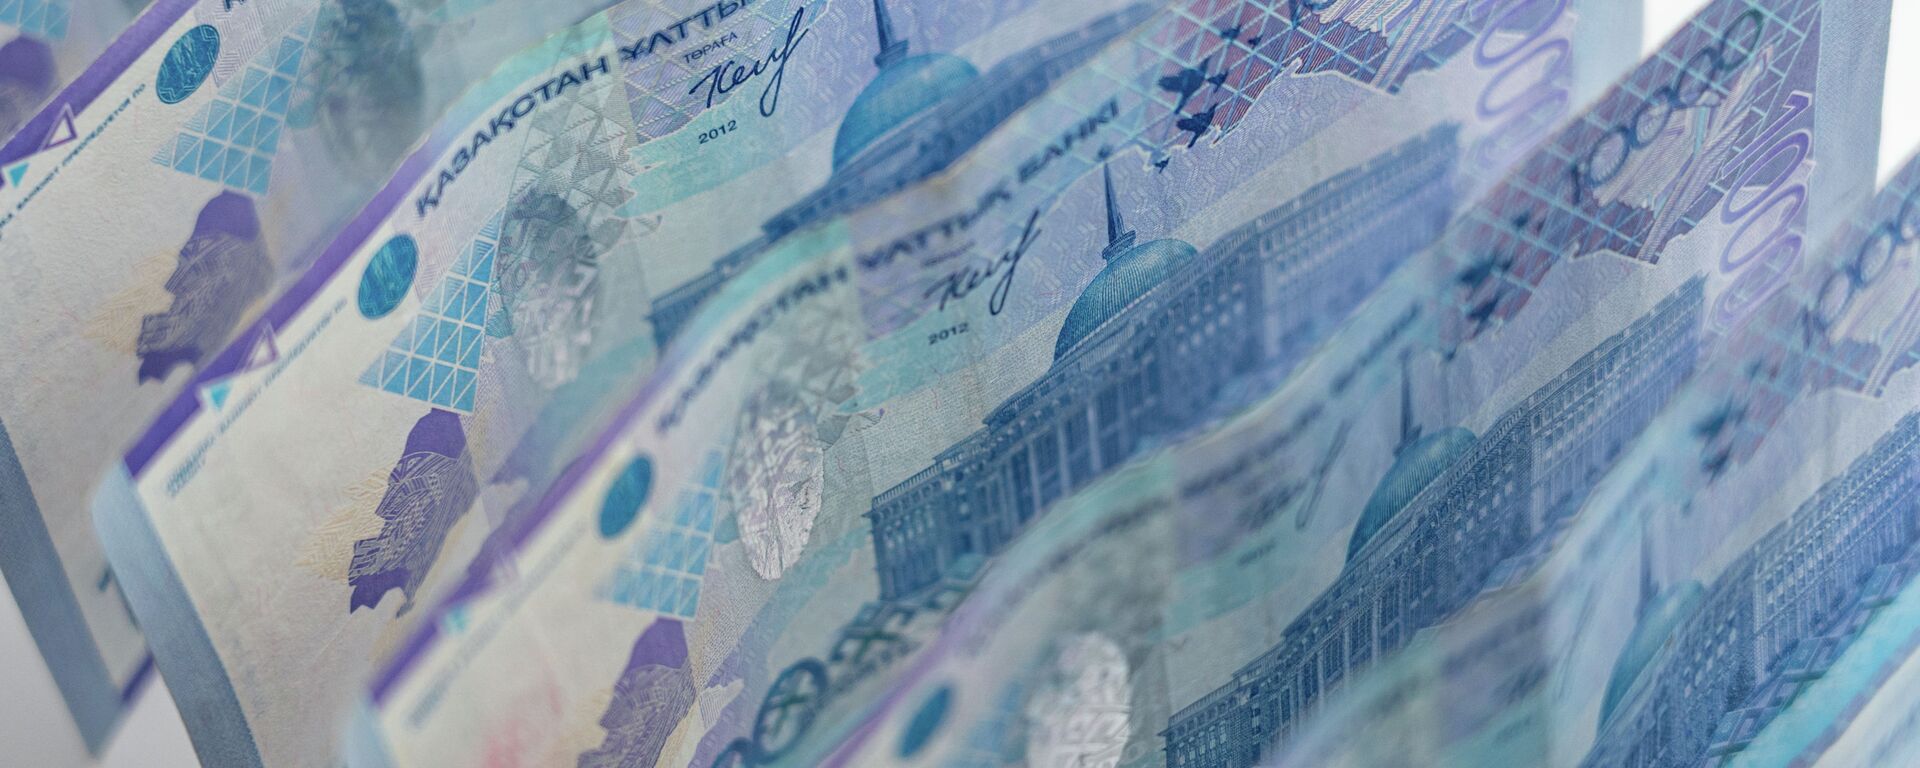 Деньги, тенге, купюры, банкноты   - Sputnik Казахстан, 1920, 14.04.2021